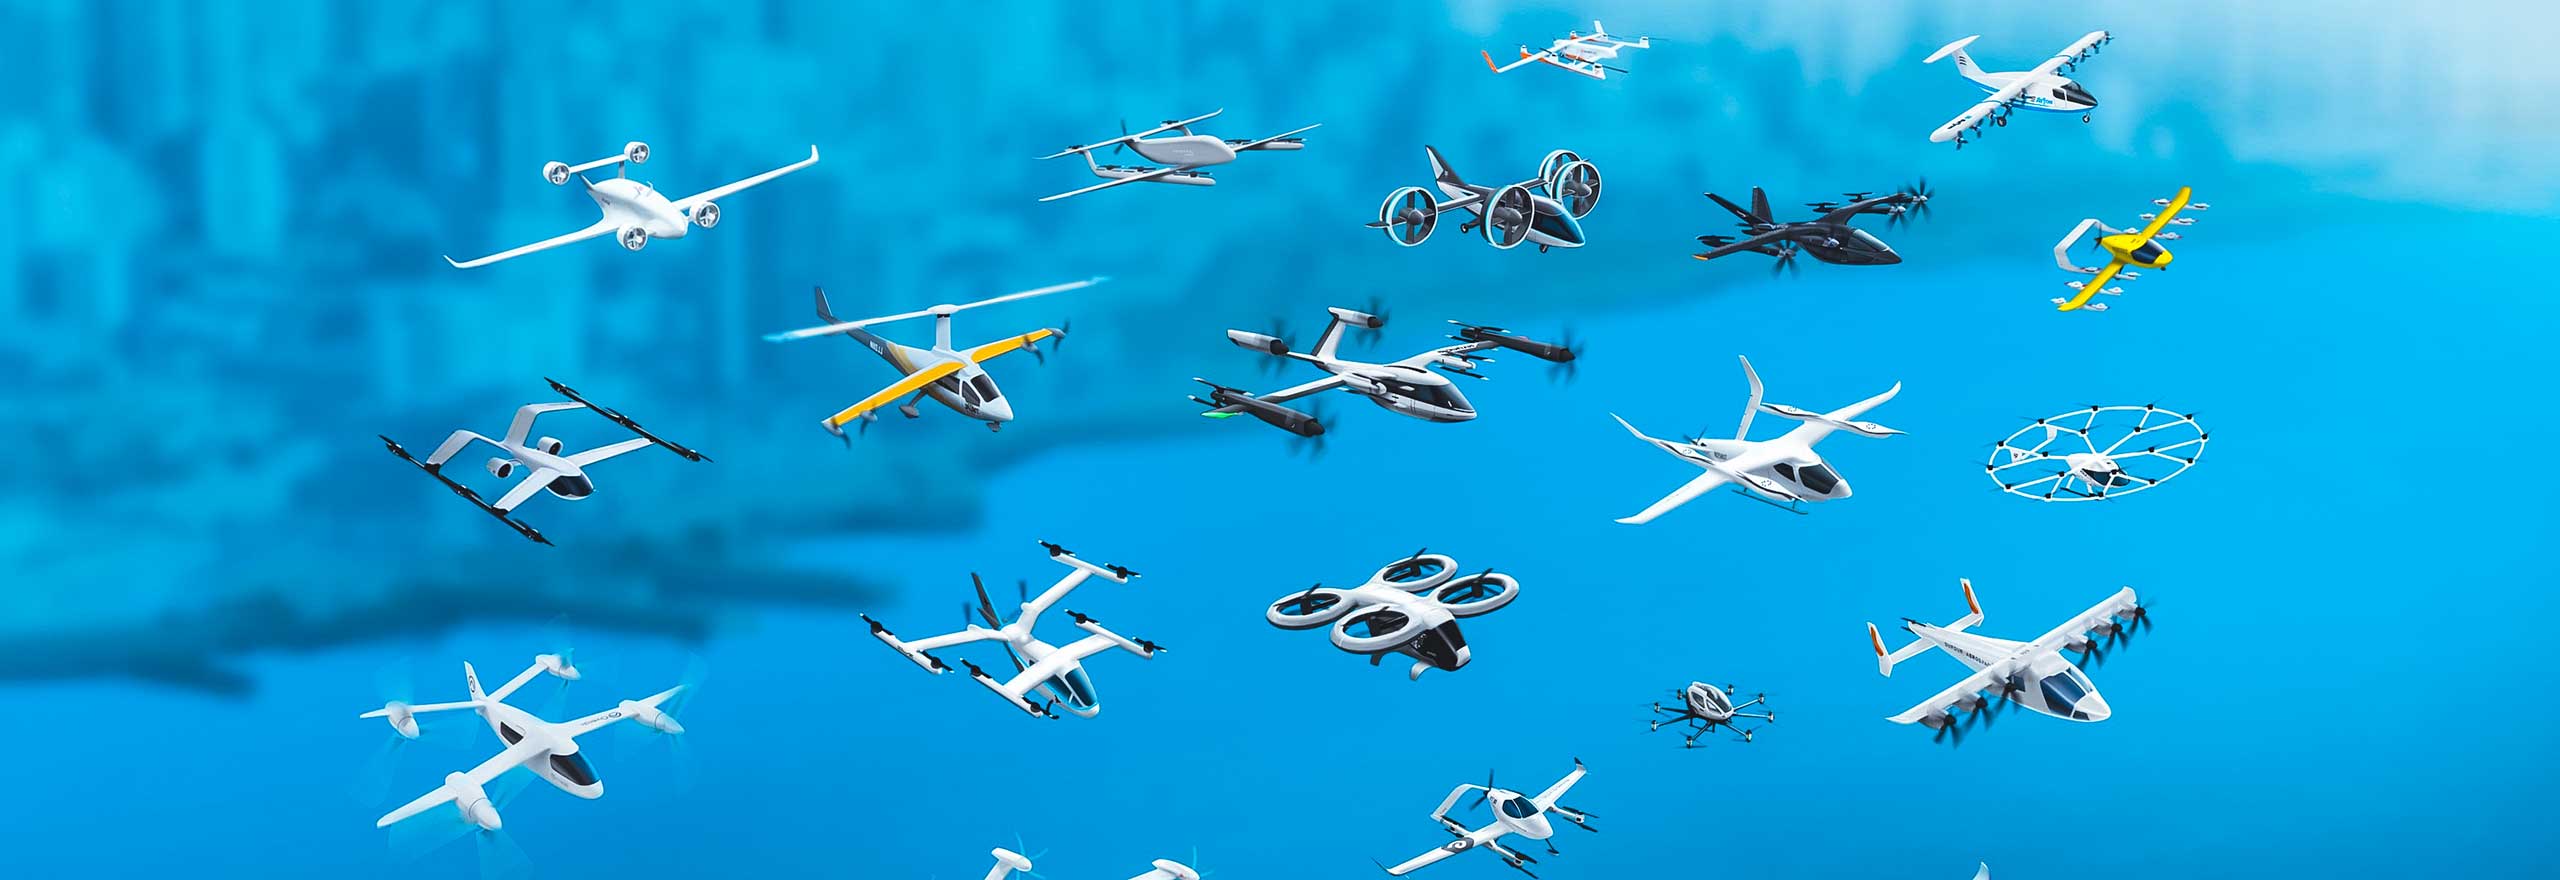 Divers avions à décollage et atterrissage verticaux électriques (eVTOL) et drones en vol suite à une simulation d’analyse structurelle en cours de développement